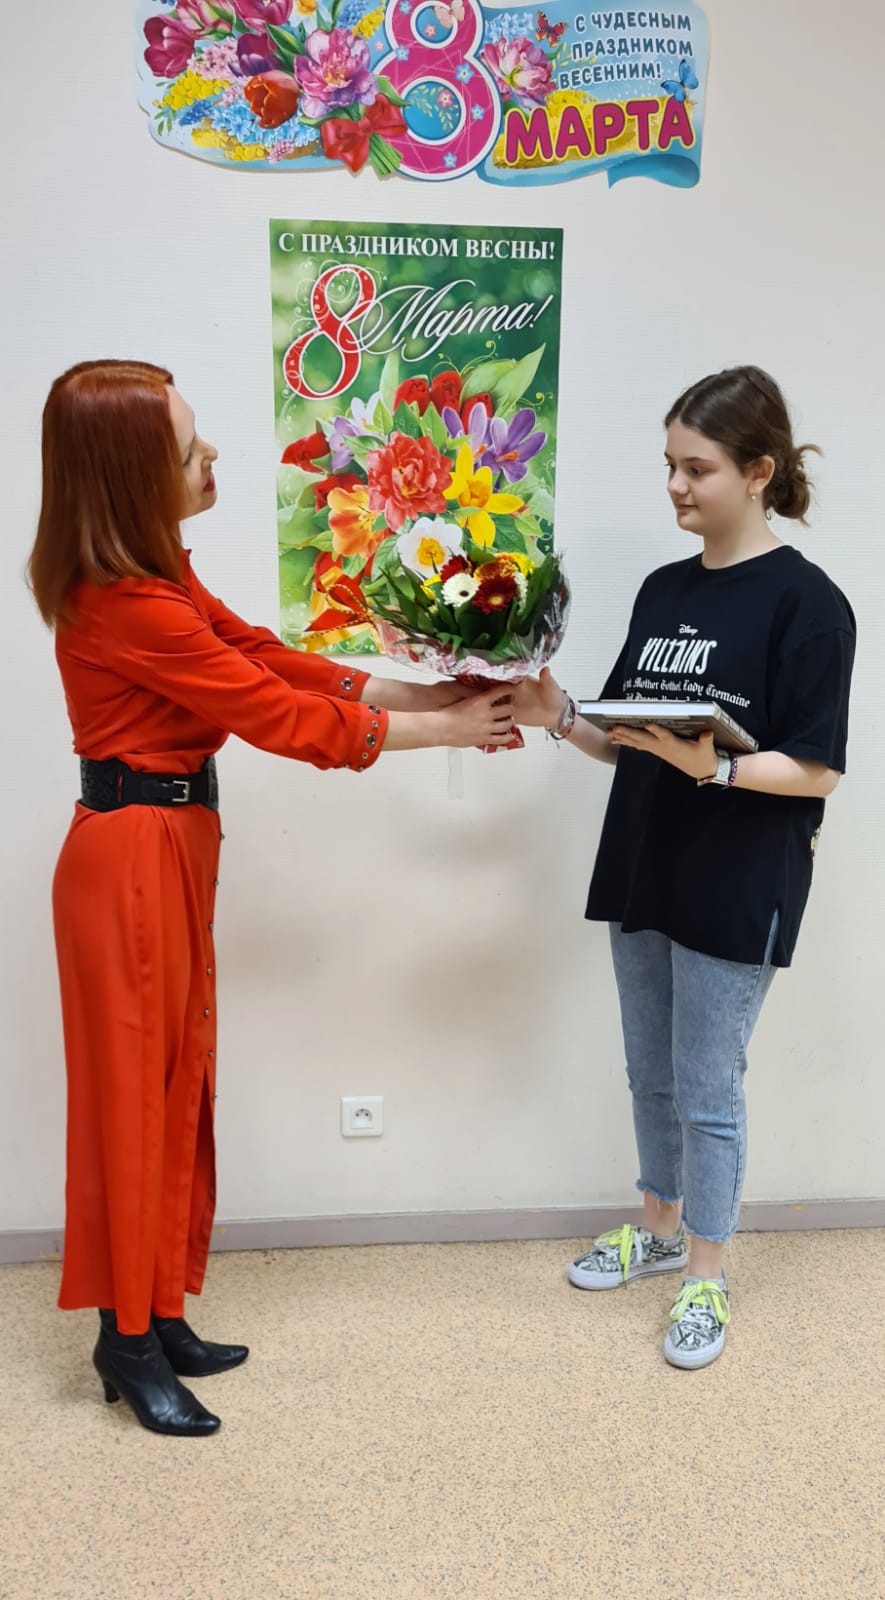 Александра Деларш — победитель в номинации конкурса Живая классика